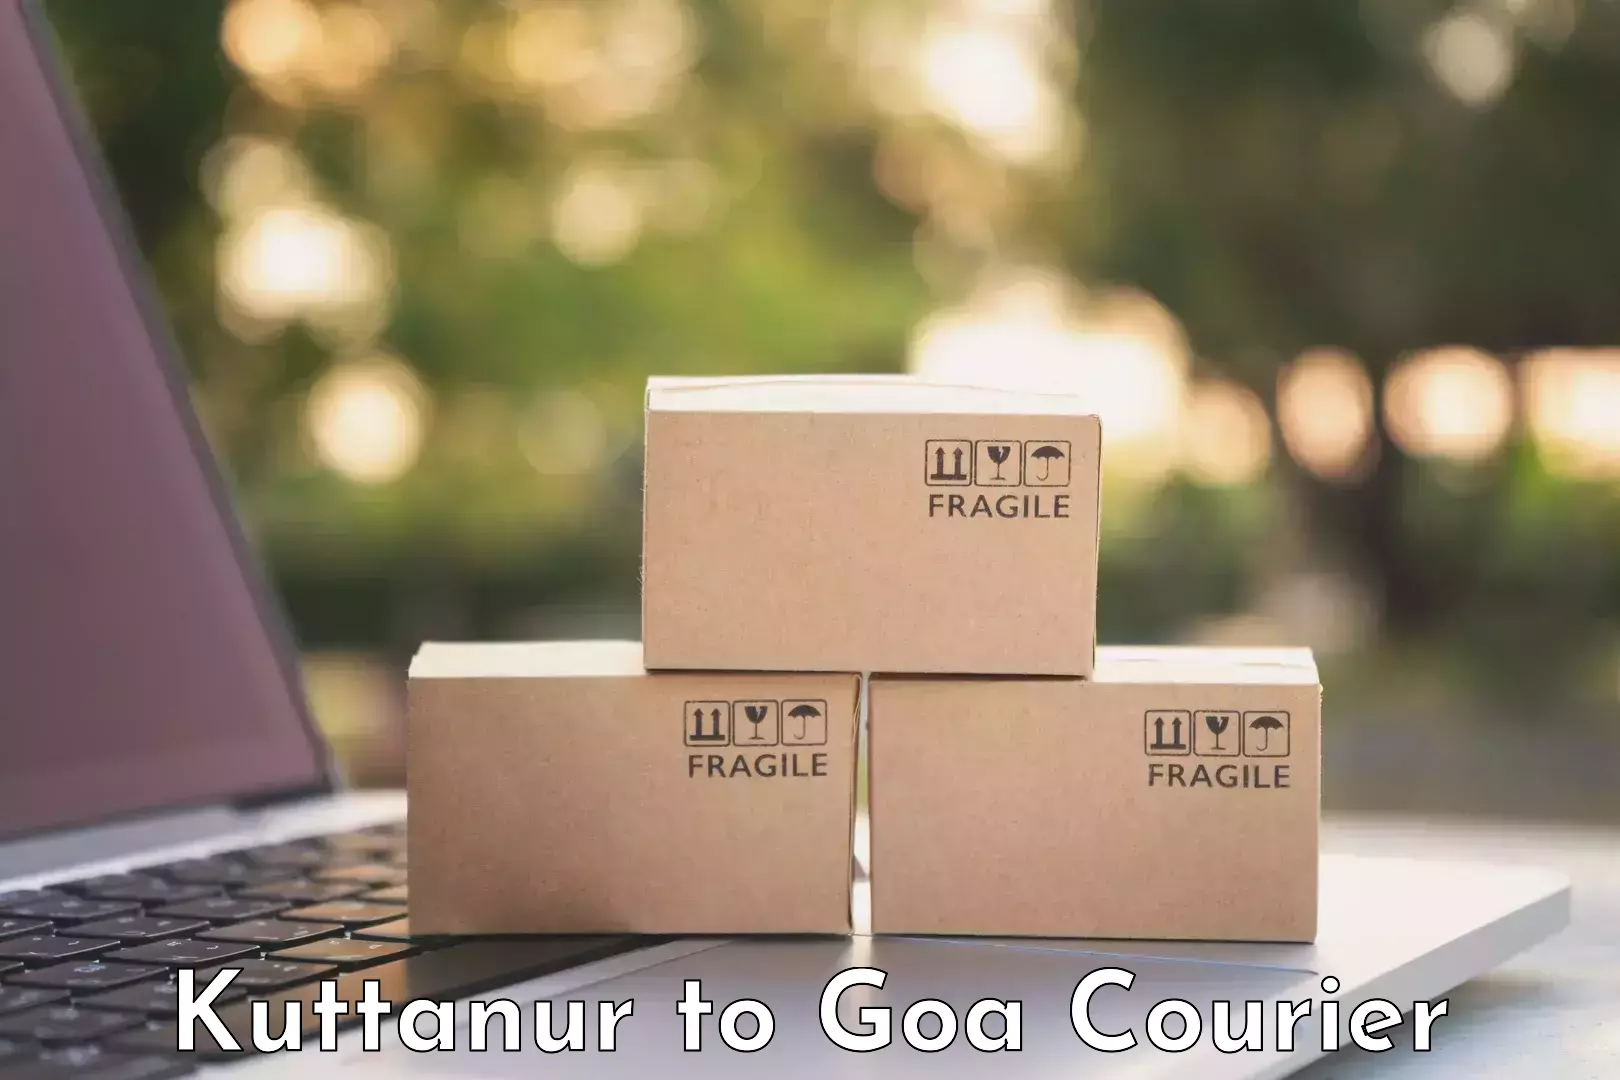 Door-to-door baggage service Kuttanur to Goa